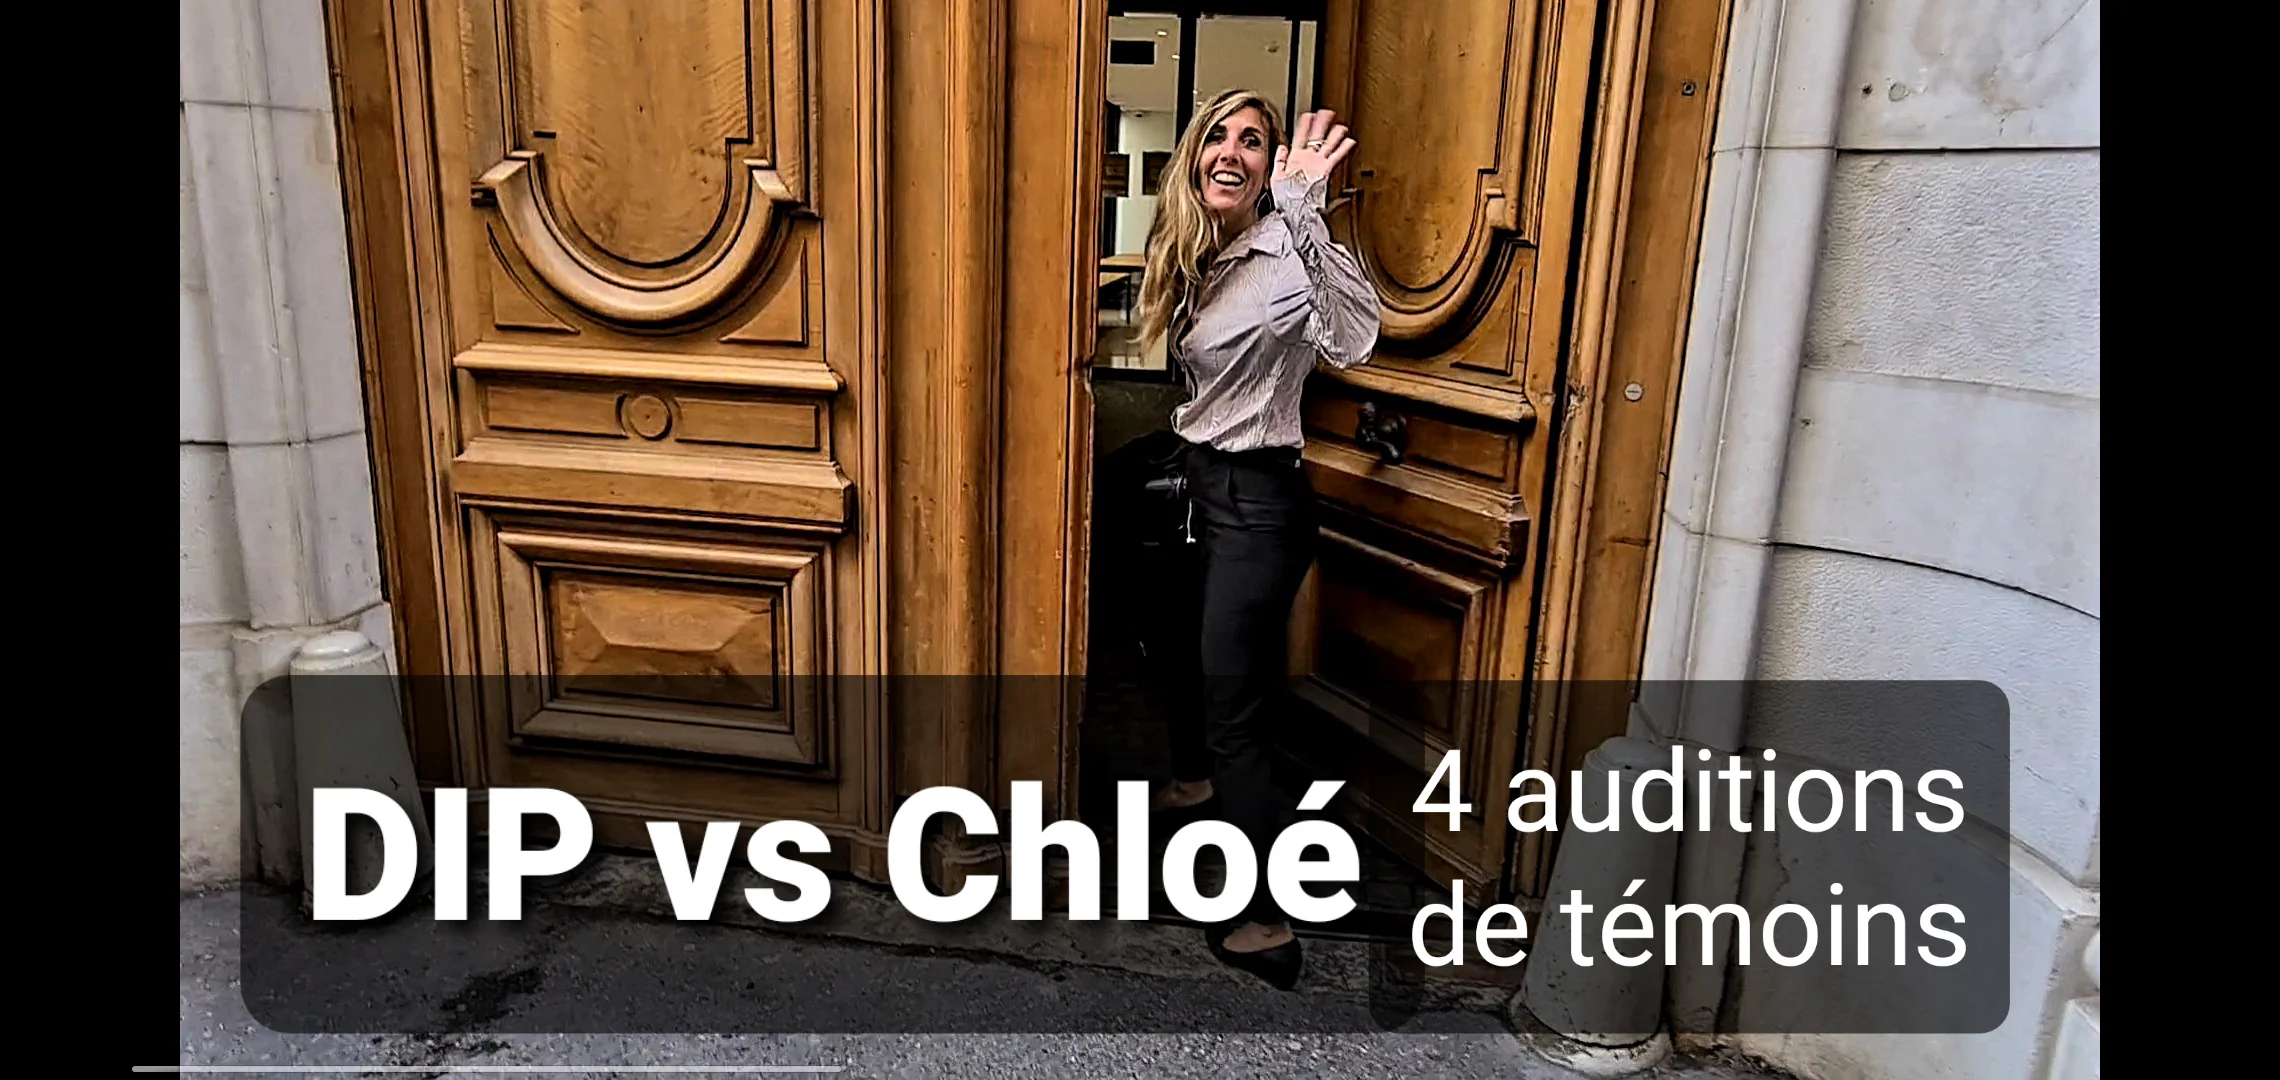 L’enquête administrative DIP vs Chloé continue – 4 auditions de témoins (sept. 2021)